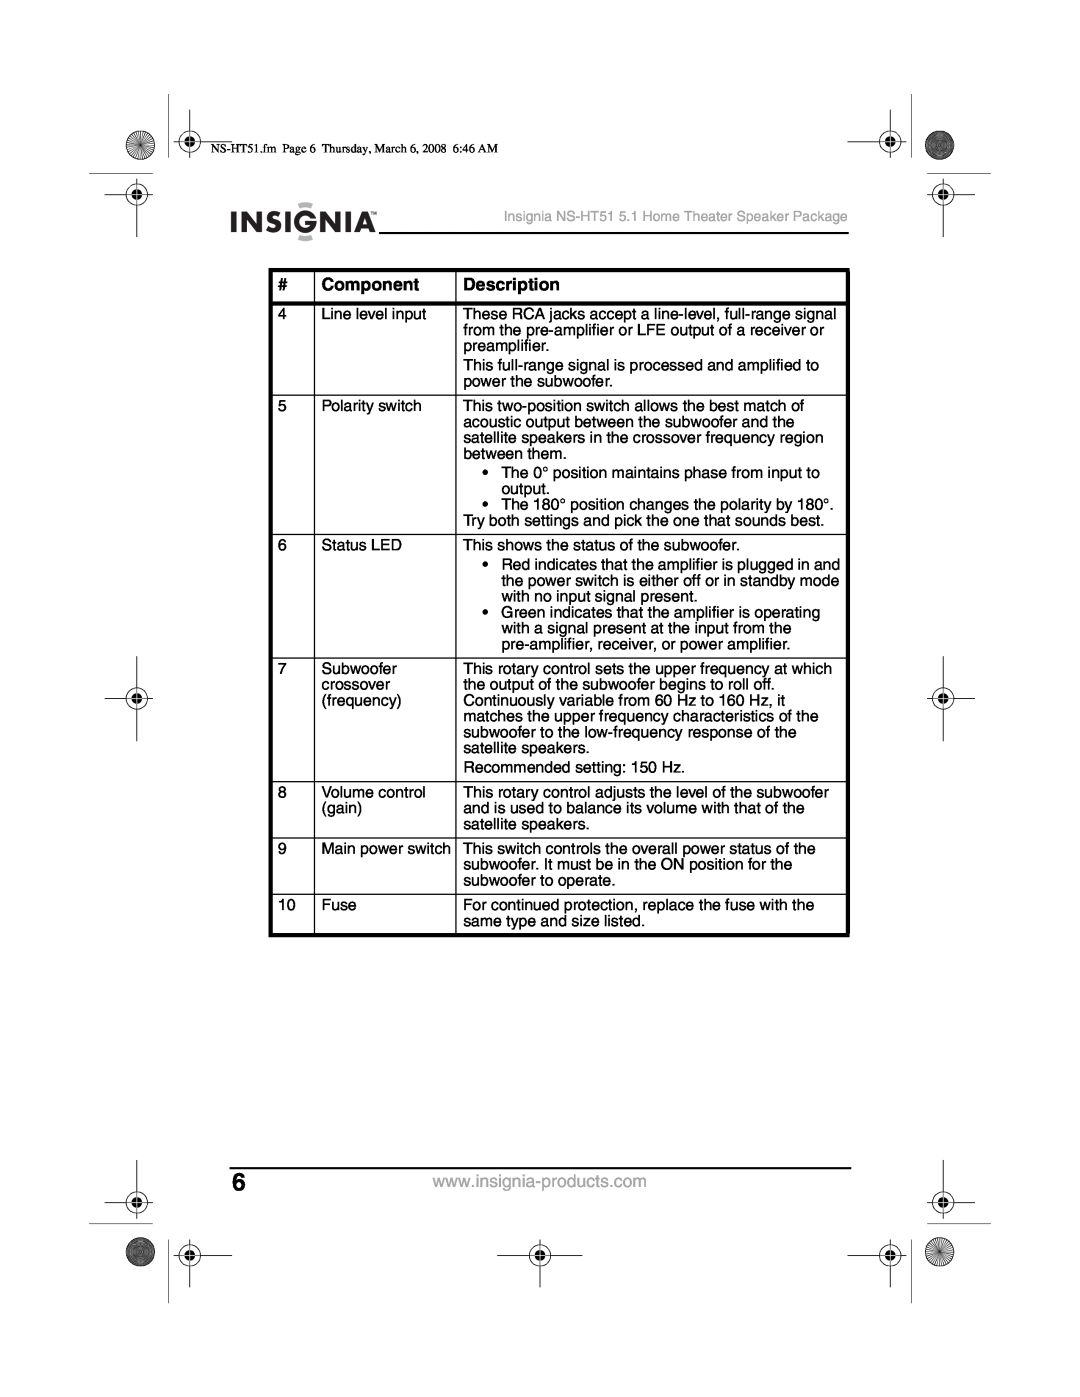 Insignia NS-HT51 manual Component, Description 